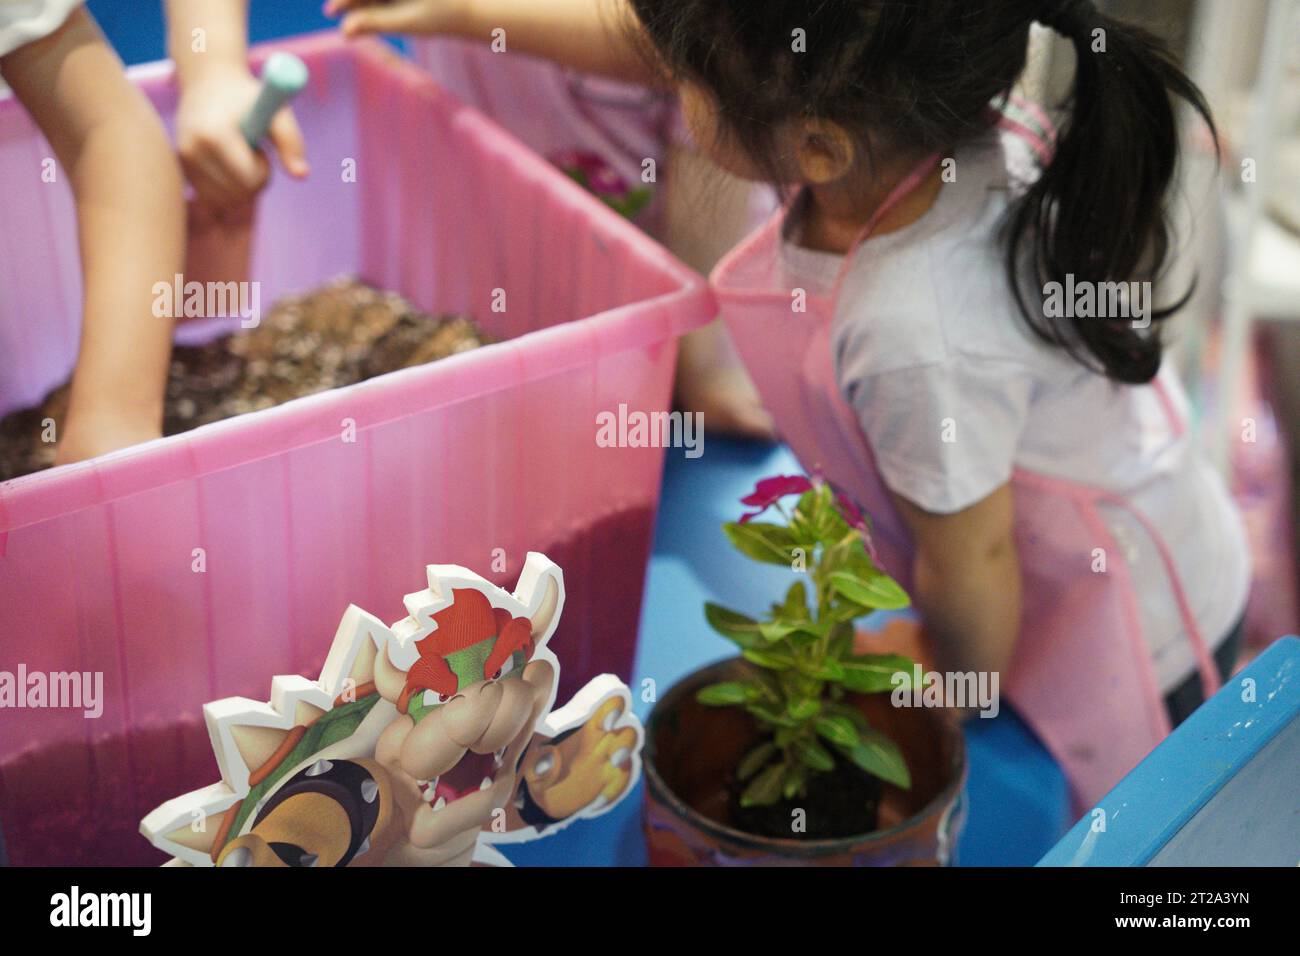 Bambini che fanno giardinaggio a casa. bambini che giardinano un bel fiore su una pentola. Foto Stock